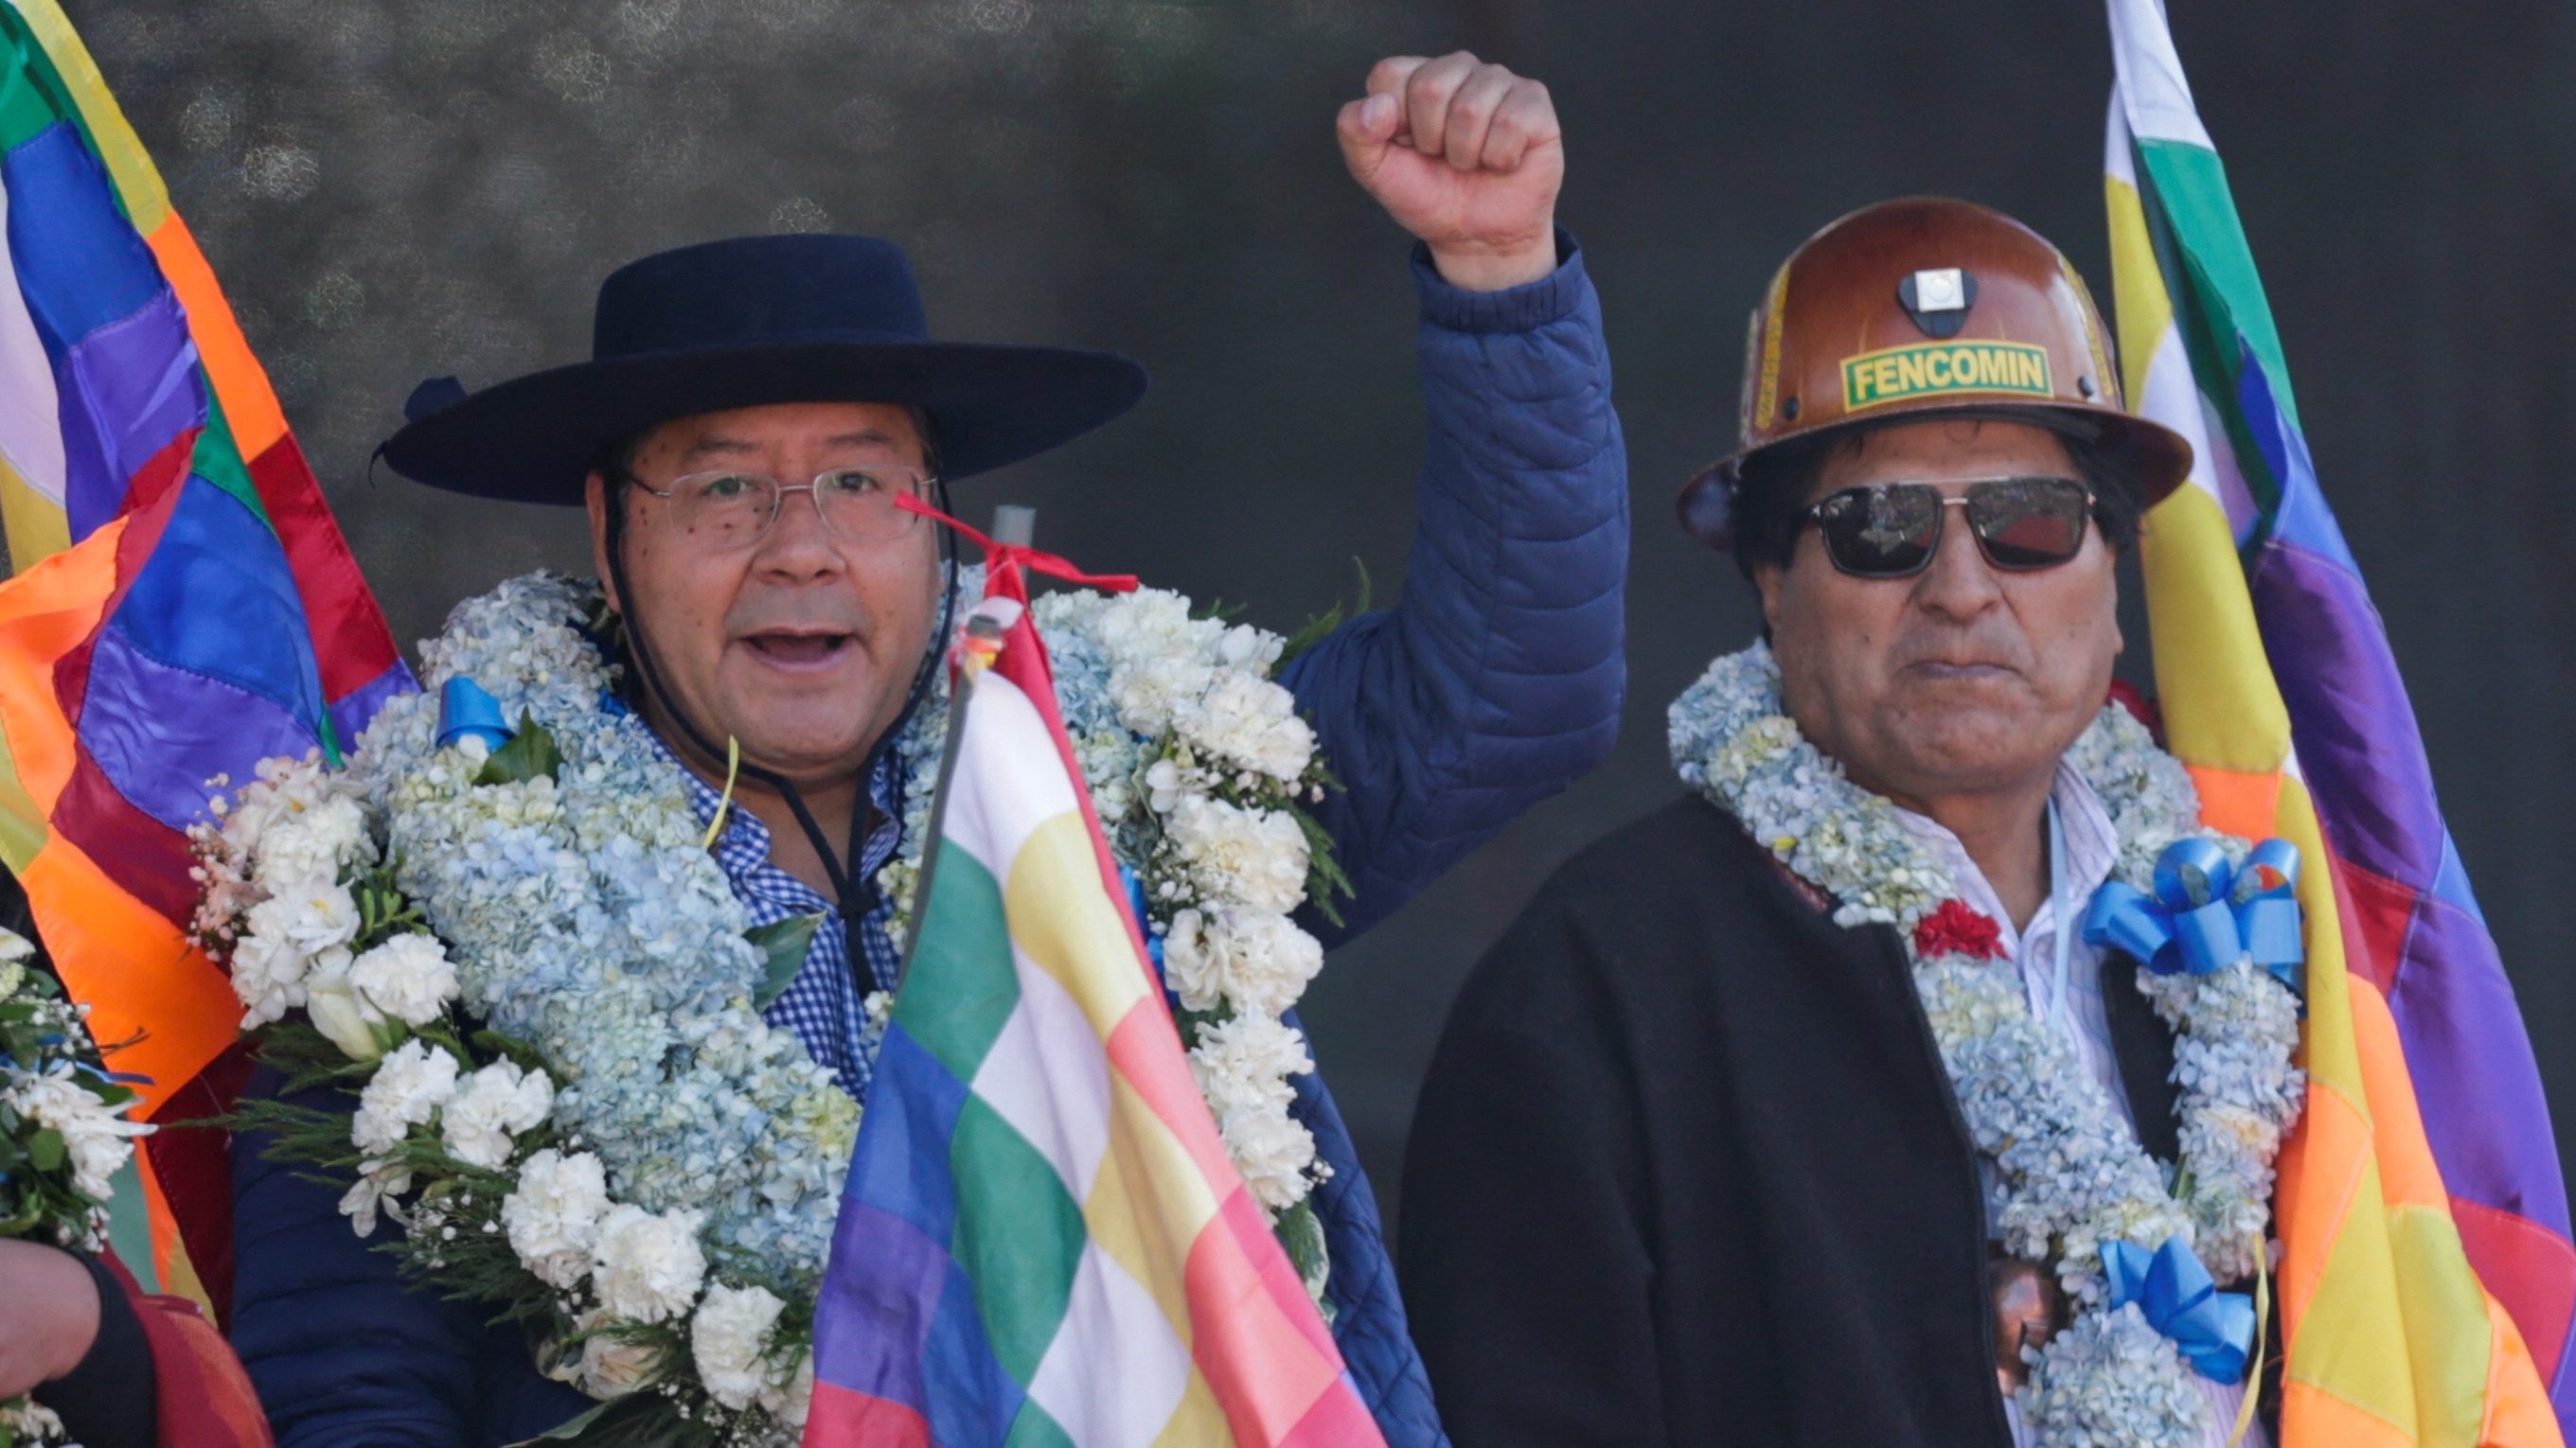 Las acusaciones que se hacen los dirigentes del partido MAS, entre las facciones de Arce y Morales, sobre las conexiones que ambos tendrían con el narcotráfico, refuerzan las sospechas de que el cocalero líder de ese partido ha marcado la política boliviana desde principios de siglo (REUTERS/Manuel Claure/Archivo)